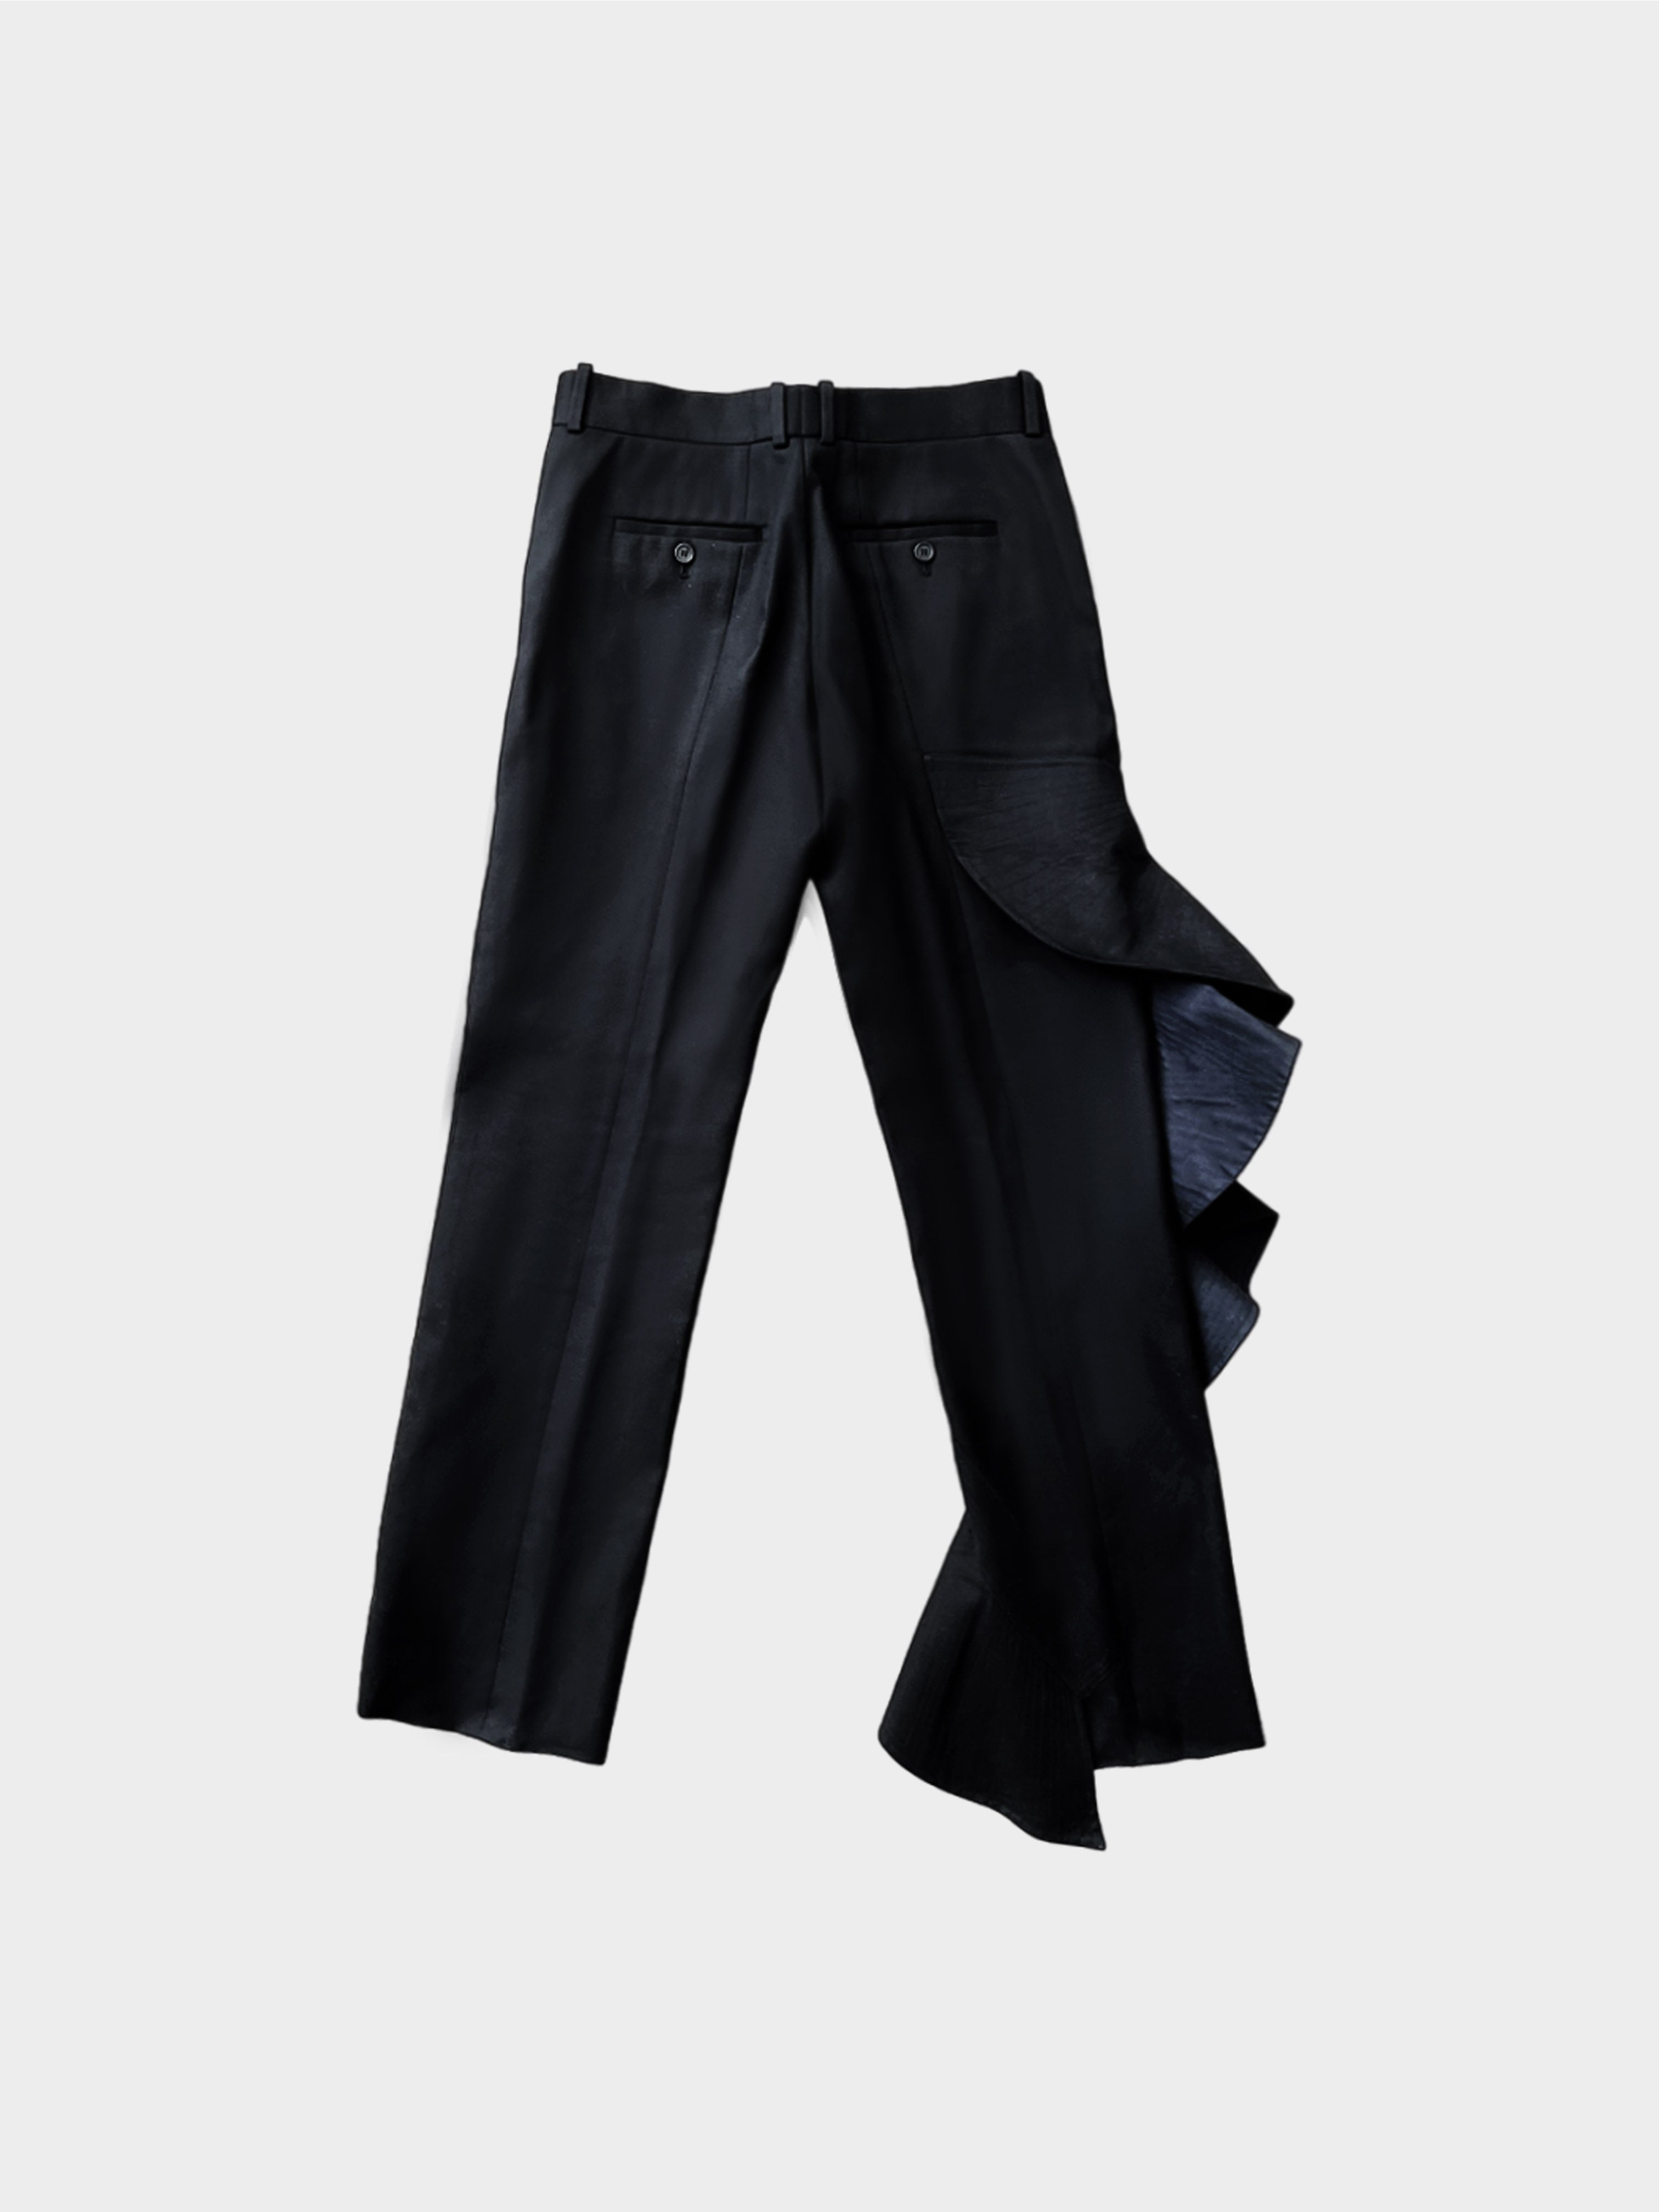 Phoebe Philo Era Deadstock Celine Vintage Designer Trousers Made in It –  Black Market Vintage